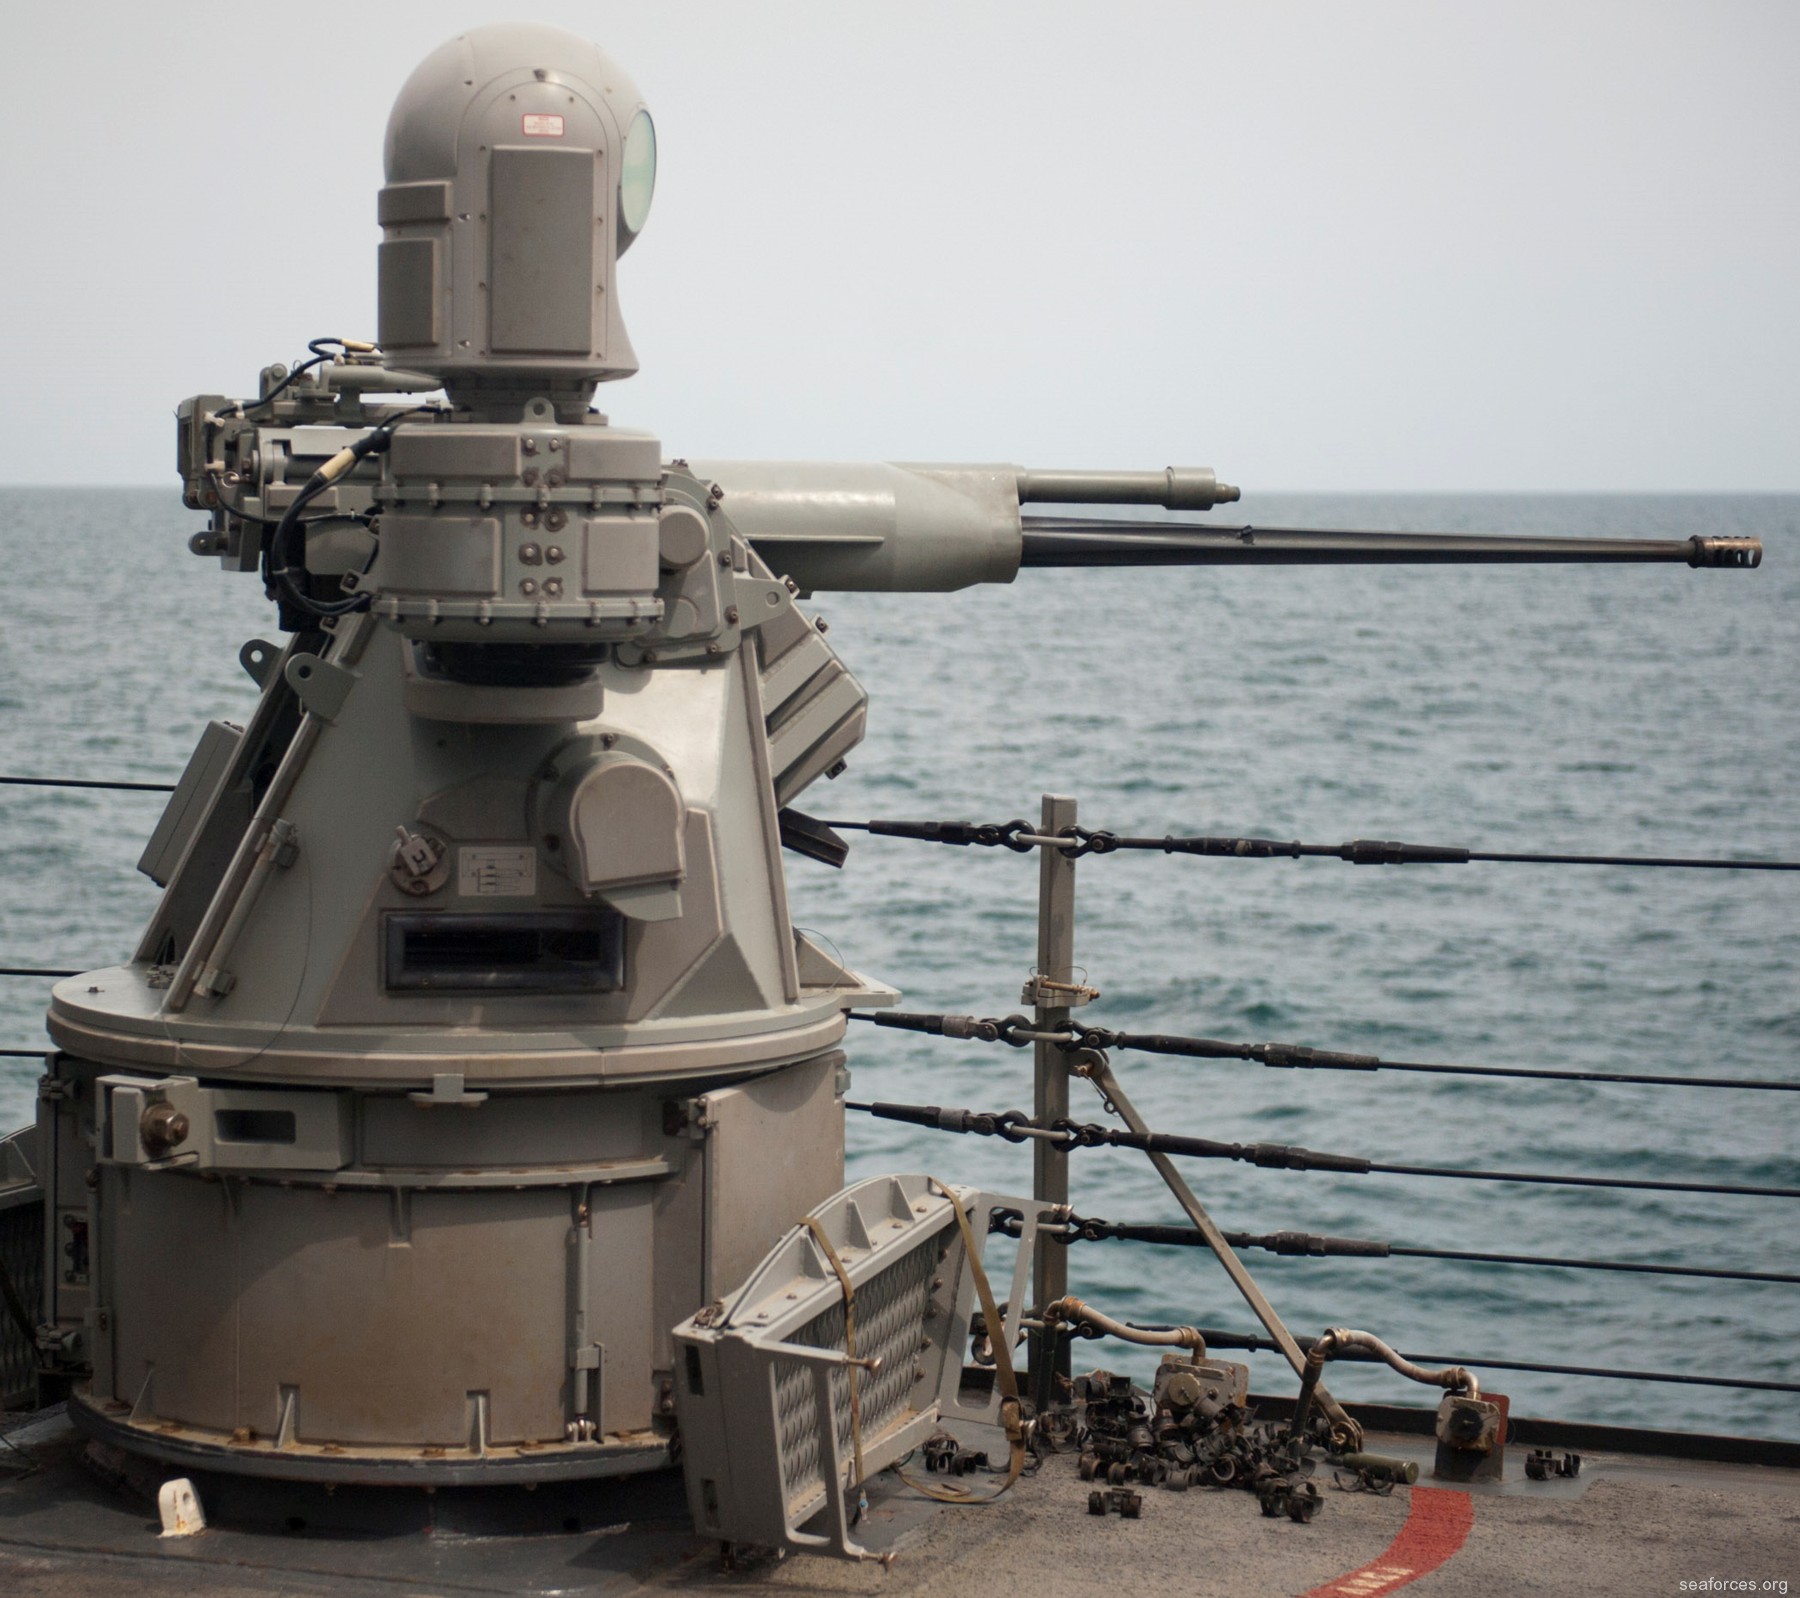 ddg-51 uss arleigh burke destroyer us navy 40 mk-38 machine gun system